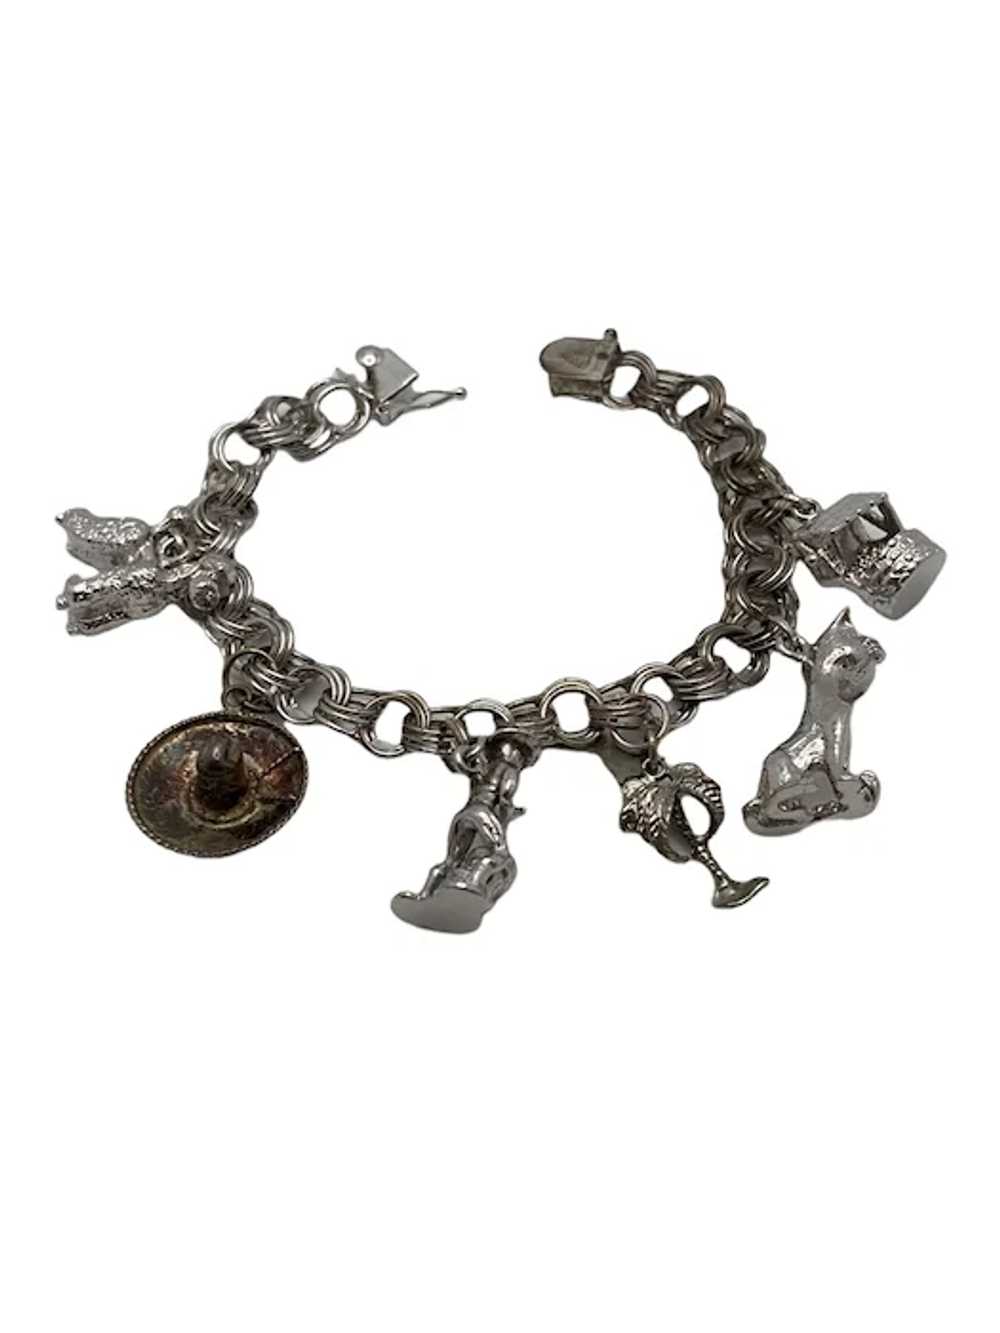 Vintage Sterling Silver Link Charm Bracelet - image 3